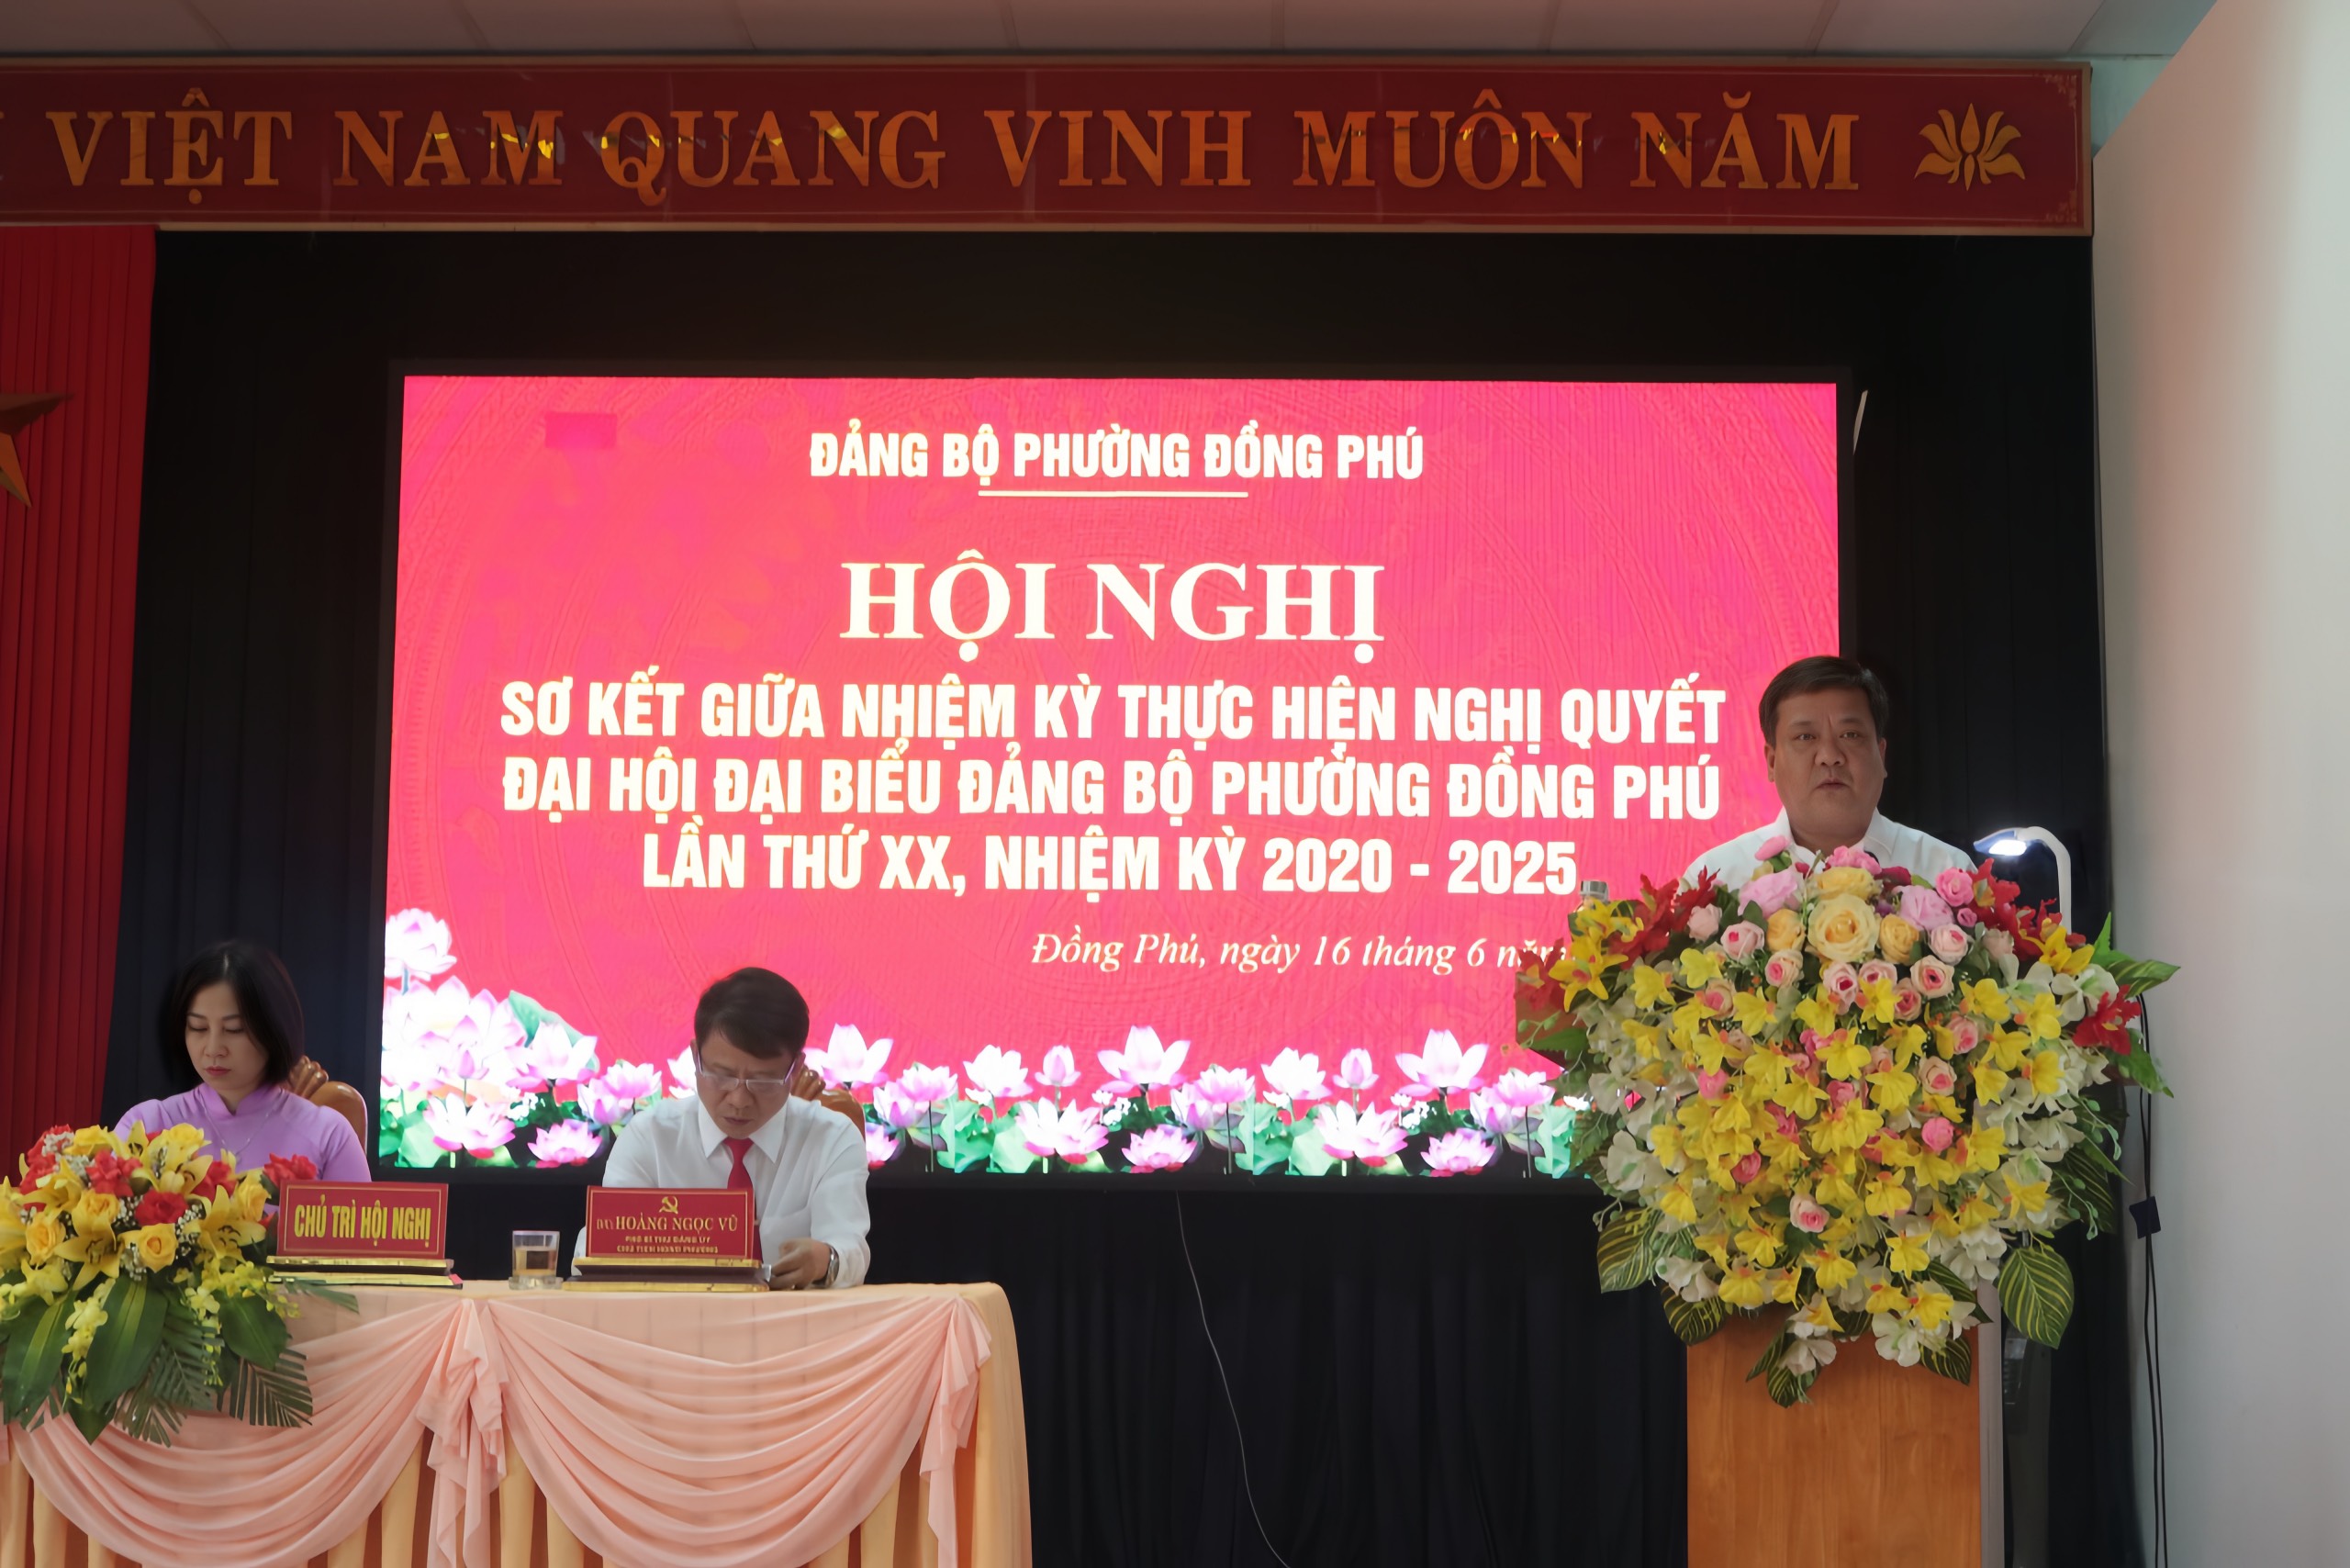 Ông Trần Phong, Ủy viên Ban Thường vụ Tỉnh ủy, Bí thư Thành ủy, Chủ tịch HĐND TP.Đồng Hới phát biểu trong hội nghị.